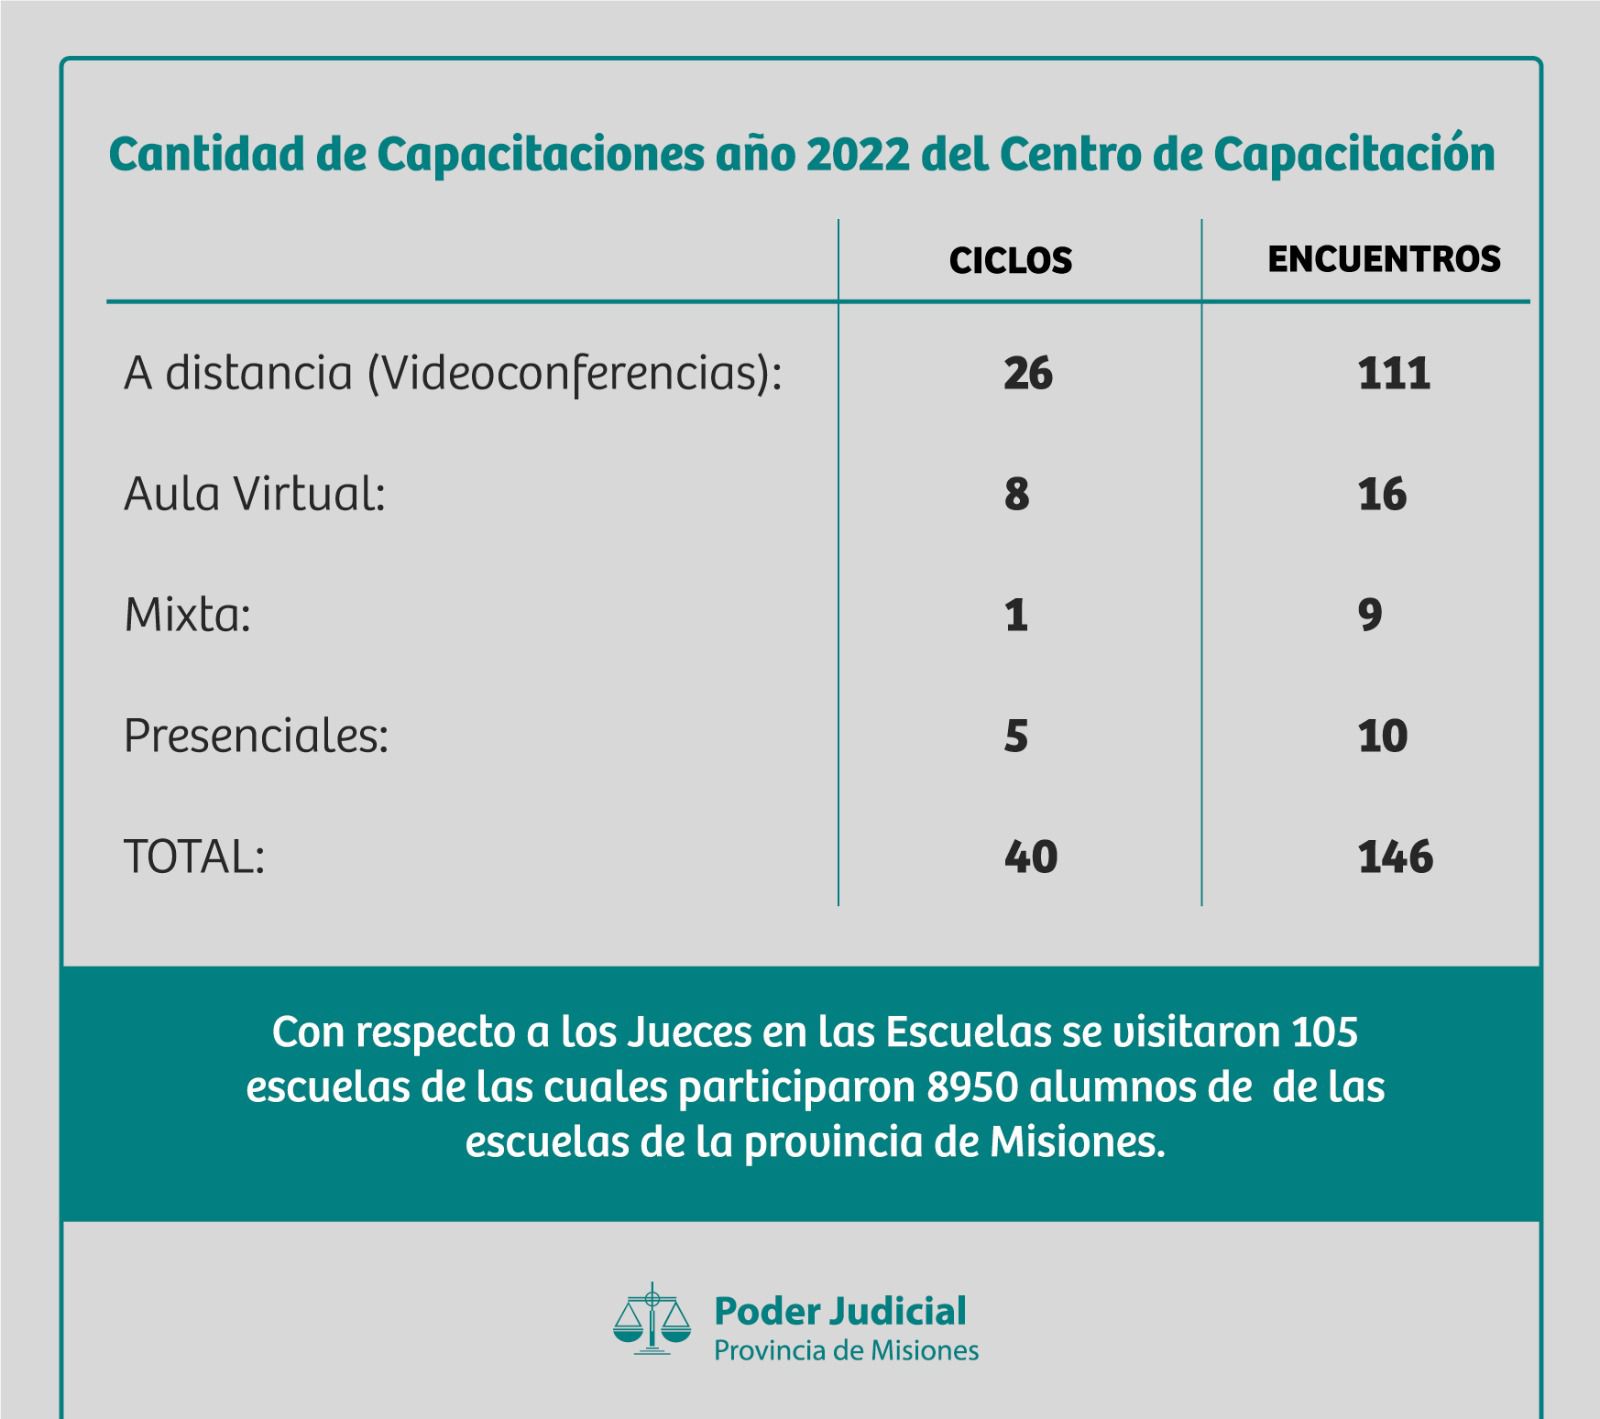 Expansión territorial del Poder Judicial de Misiones 2020/23 "para estar más cerca de la gente" imagen-2